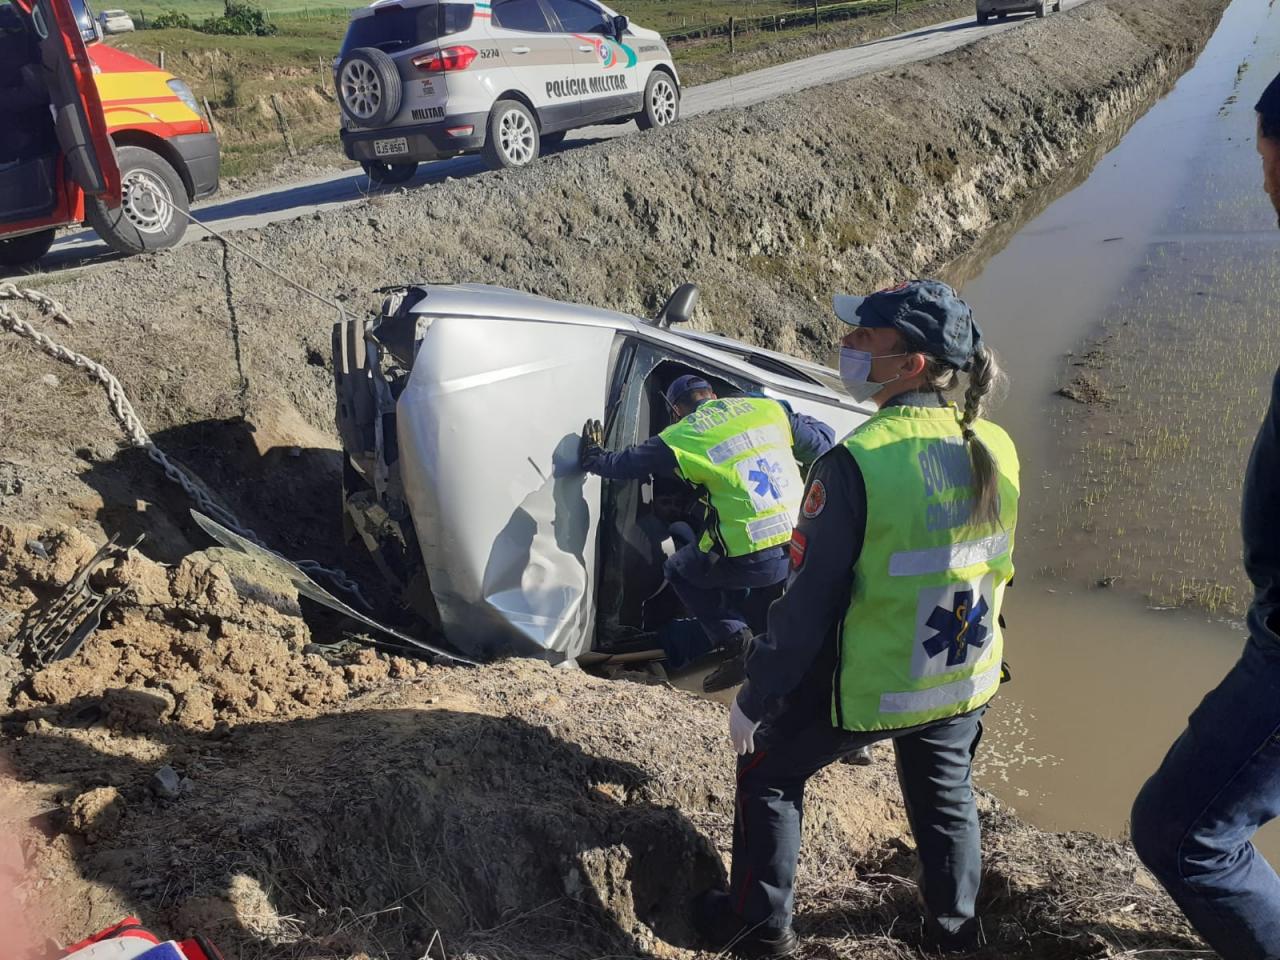 Jovem perde controle de veículo e cai dentro de arrozeira em Agrolândia